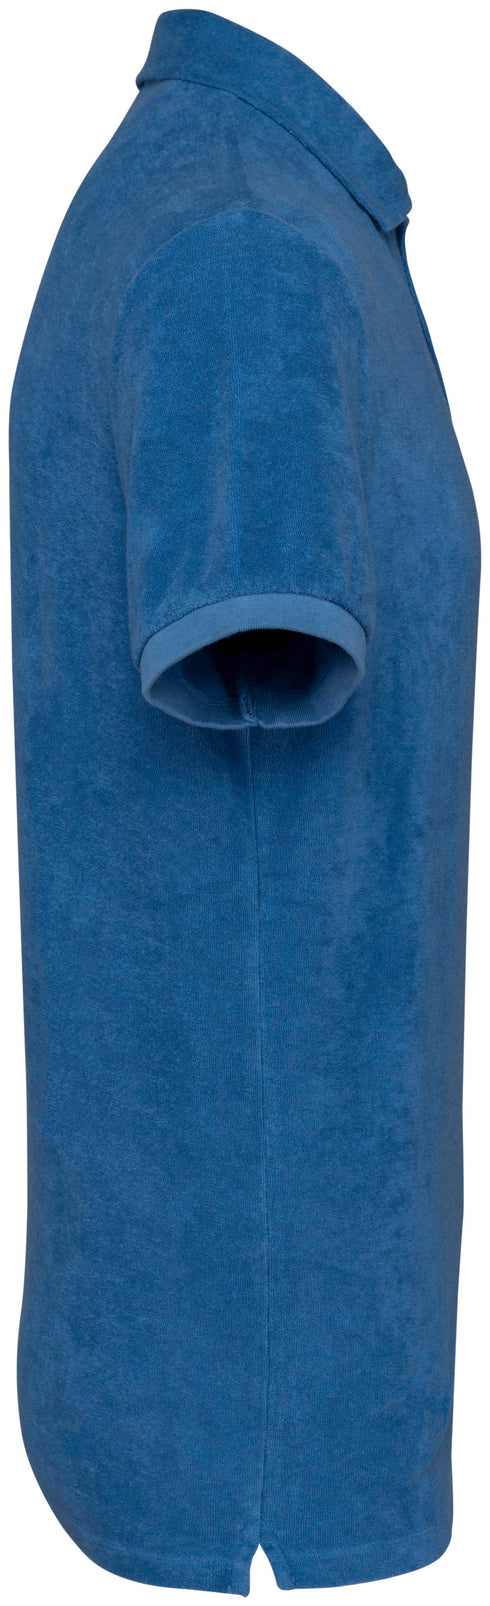 Polo de toalla de rizo para hombre - Hecho en Portugal - 210 g/m² - NS227